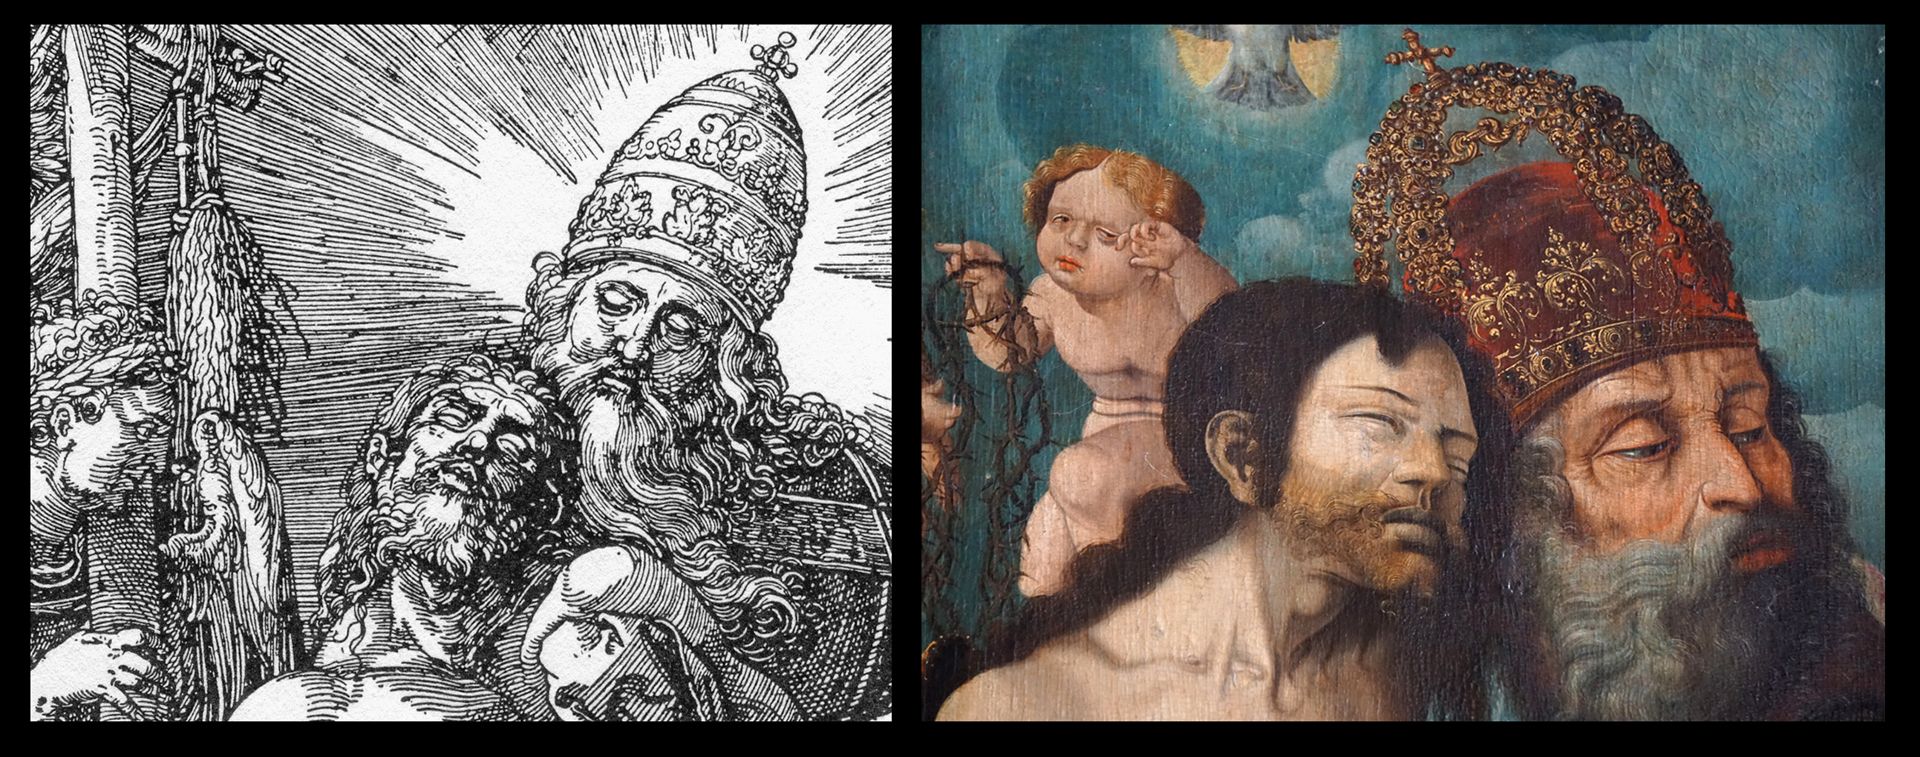 Dürersche Stiftungstafel Die päpstliche Tiara Gottes bei Dürer ist hier sicherlich konfessionsbedingt zu einer Kaiserkrone geworden.